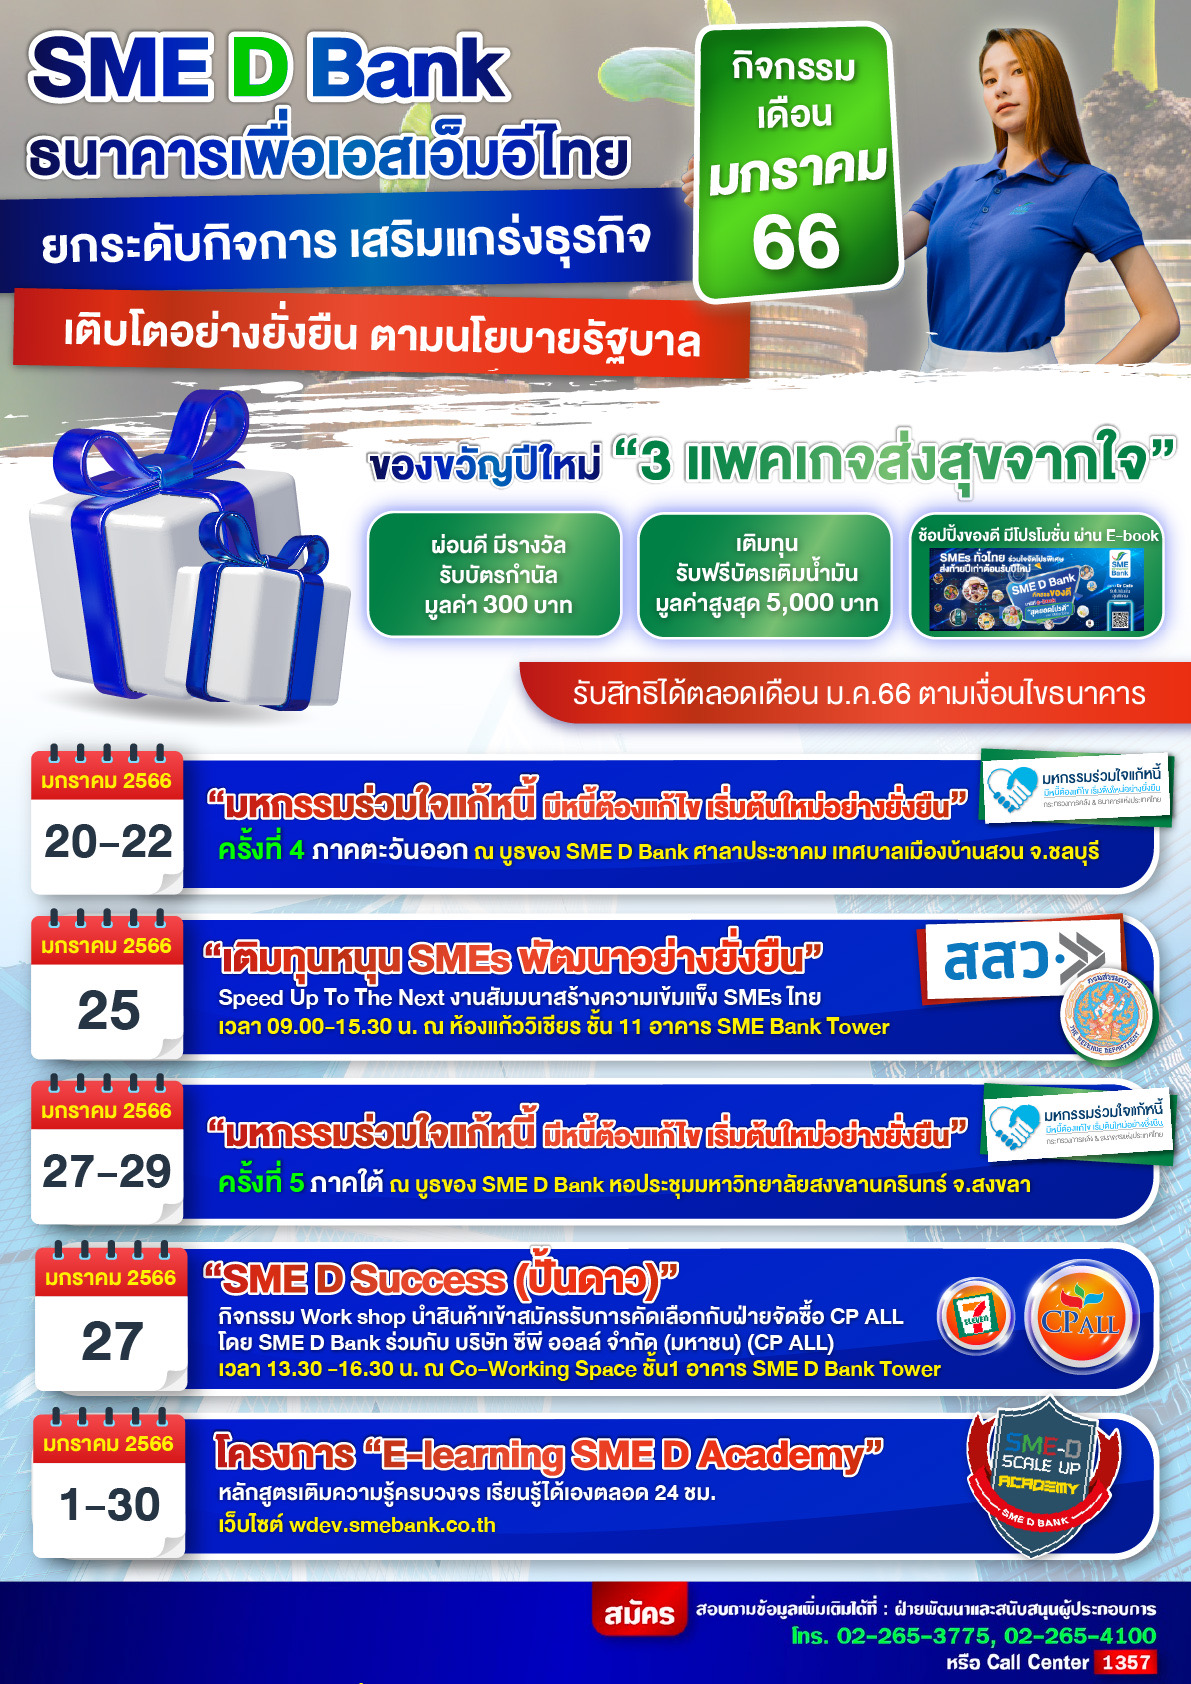 SME D Bank จัดให้ 6 กิจกรรมพัฒนาเอสเอ็มอีไทย รับศักราชใหม่  ตลอดเดือน ม.ค.66